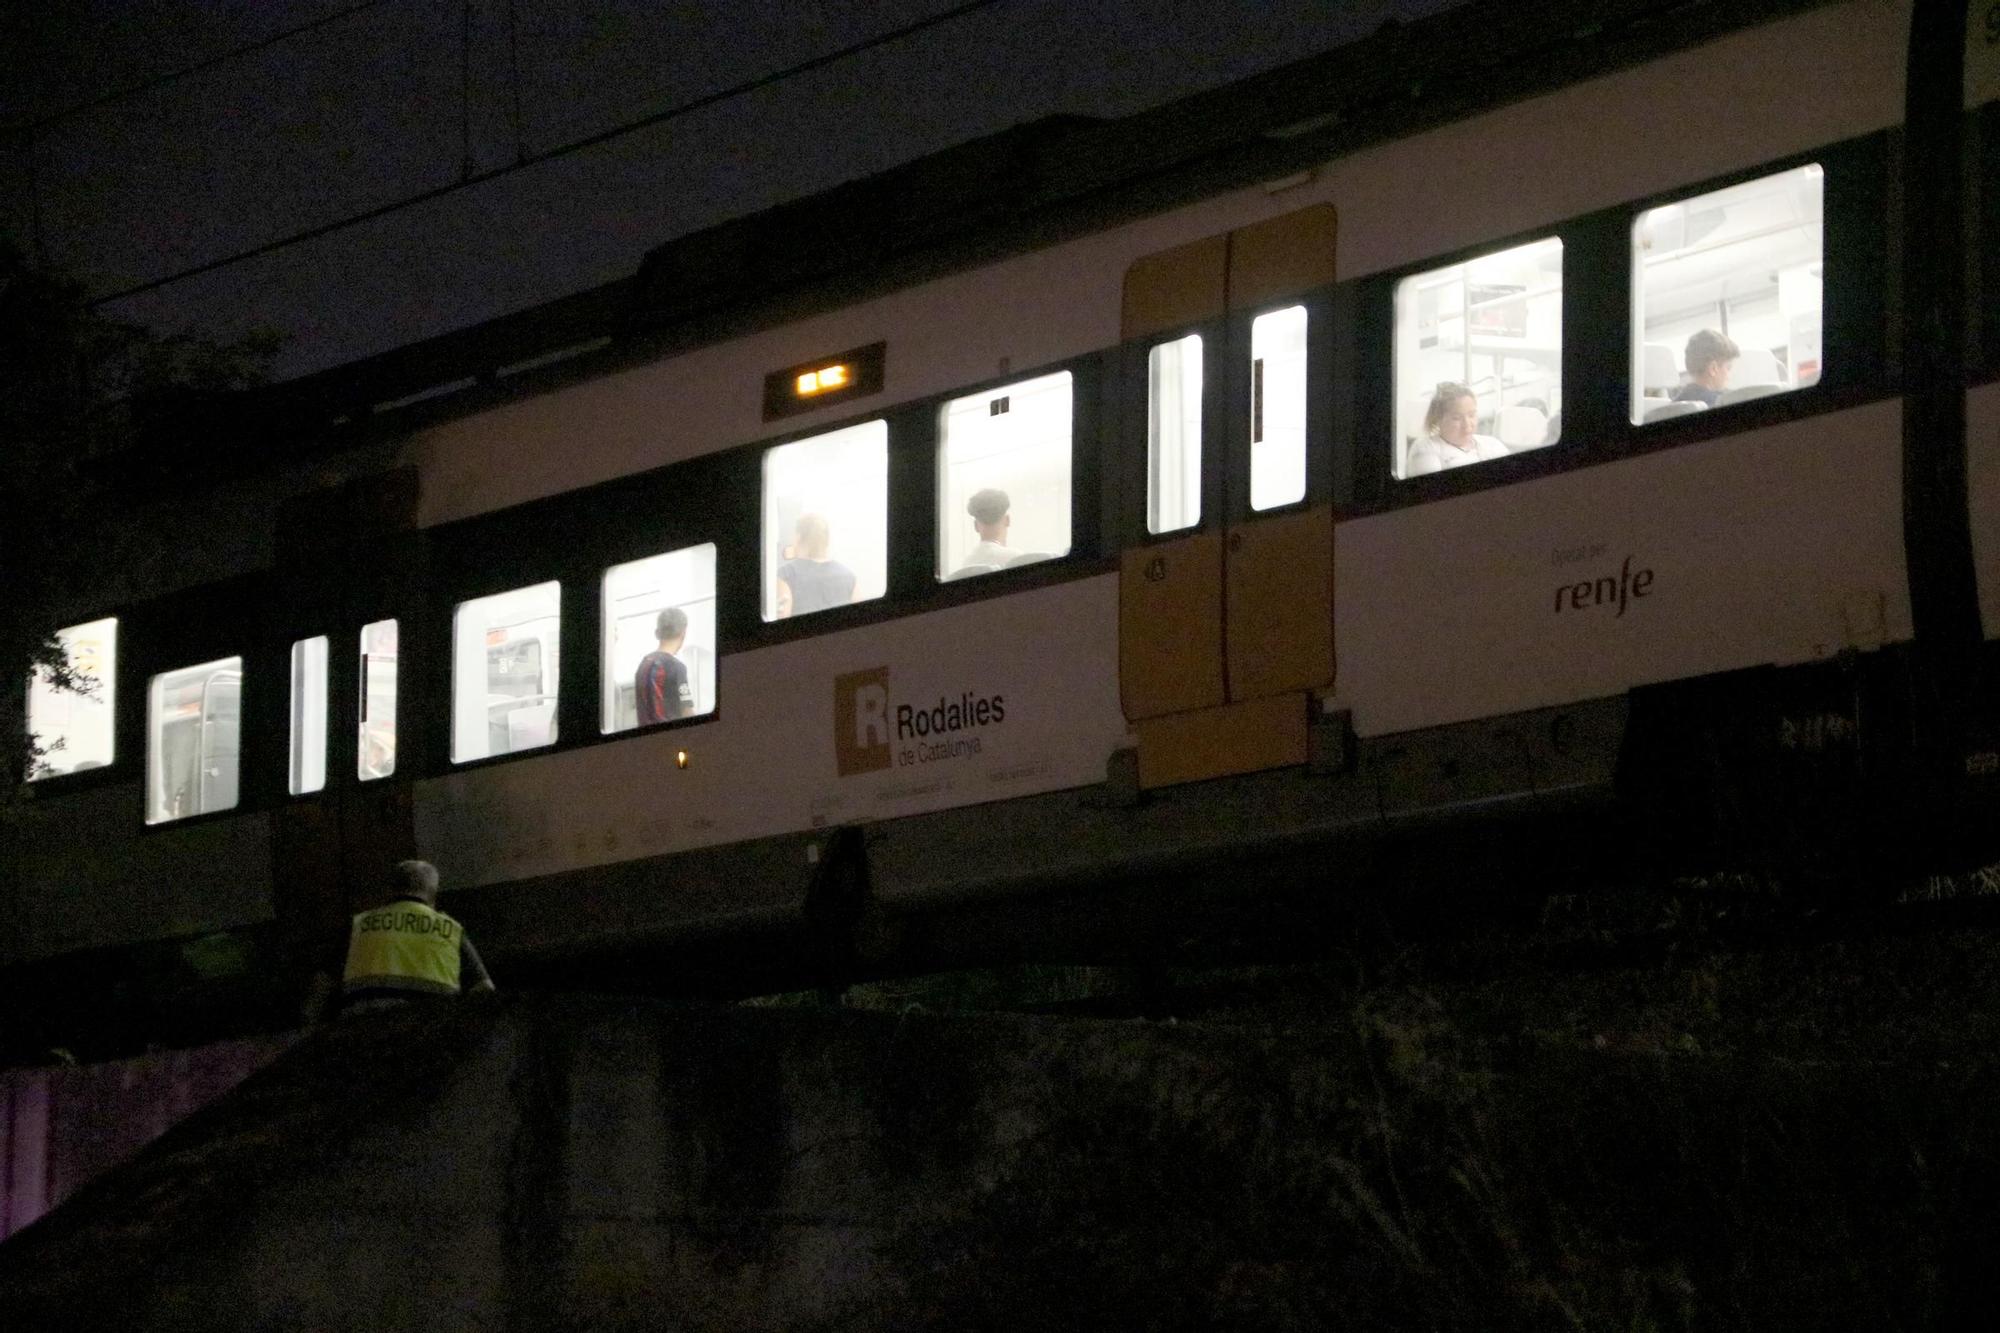 L'atropellament múltiple d'un tren deixa quatre joves morts a Montmeló